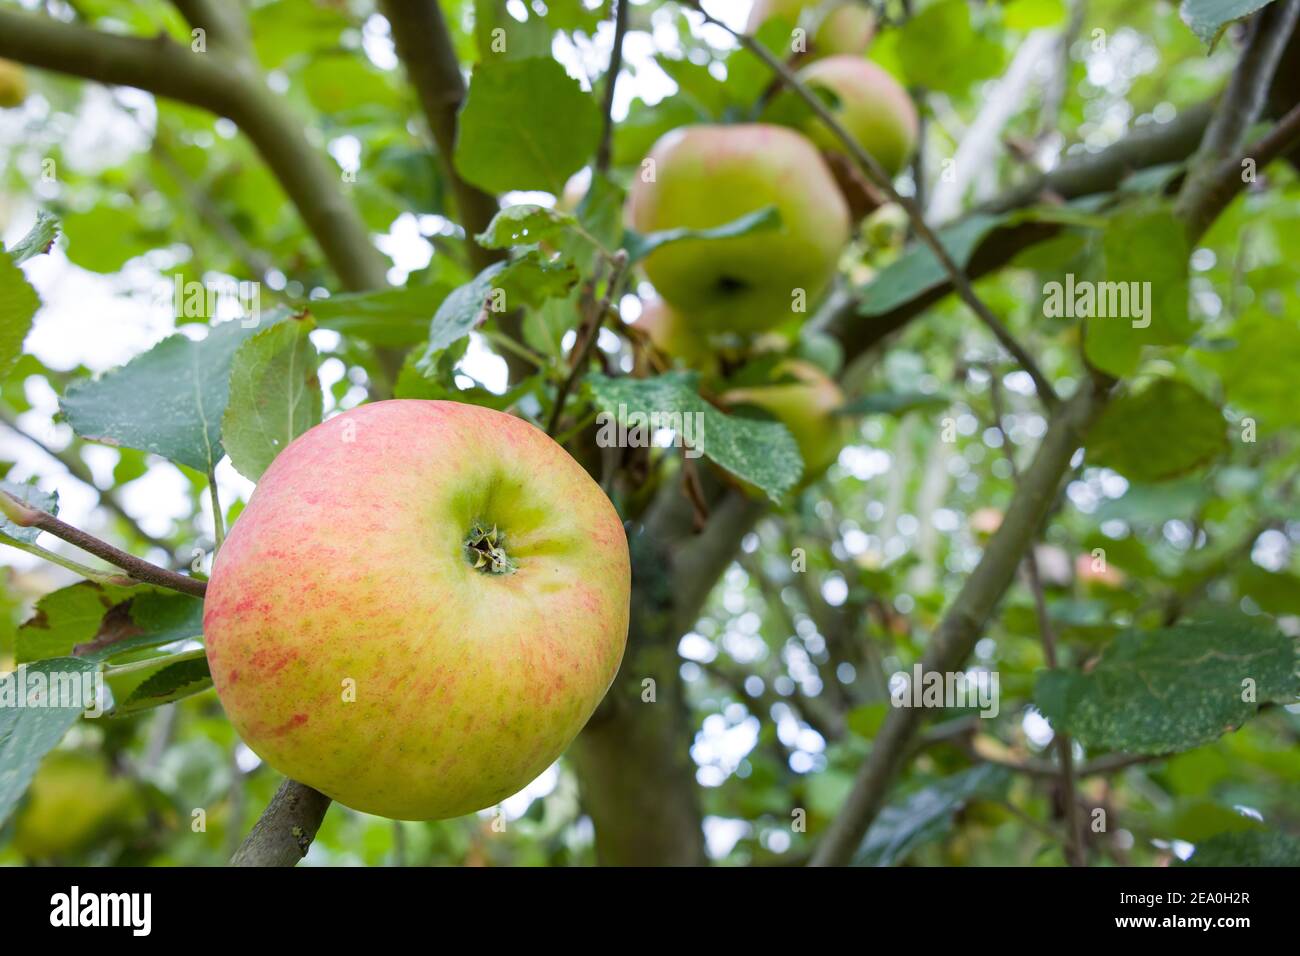 Détail de la cuisson des pommes (Bramleys) poussant dans un arbre dans un jardin anglais, Royaume-Uni Banque D'Images